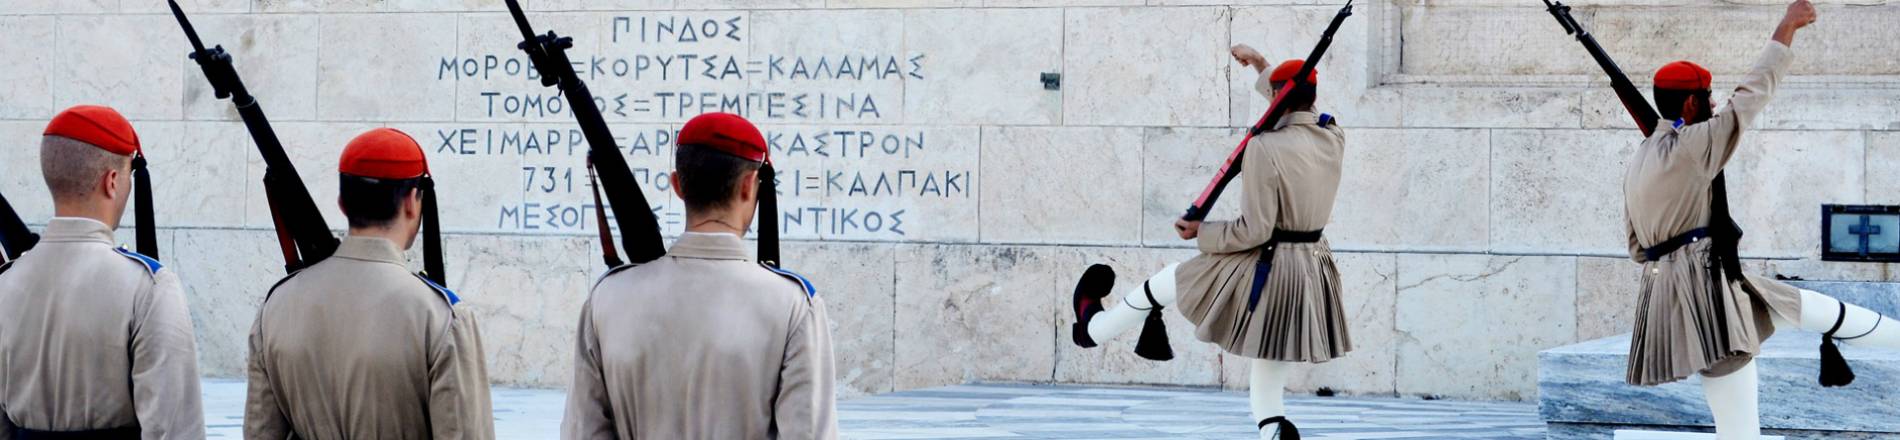 Atena i Antička Grčka 8 dana PREMIUM